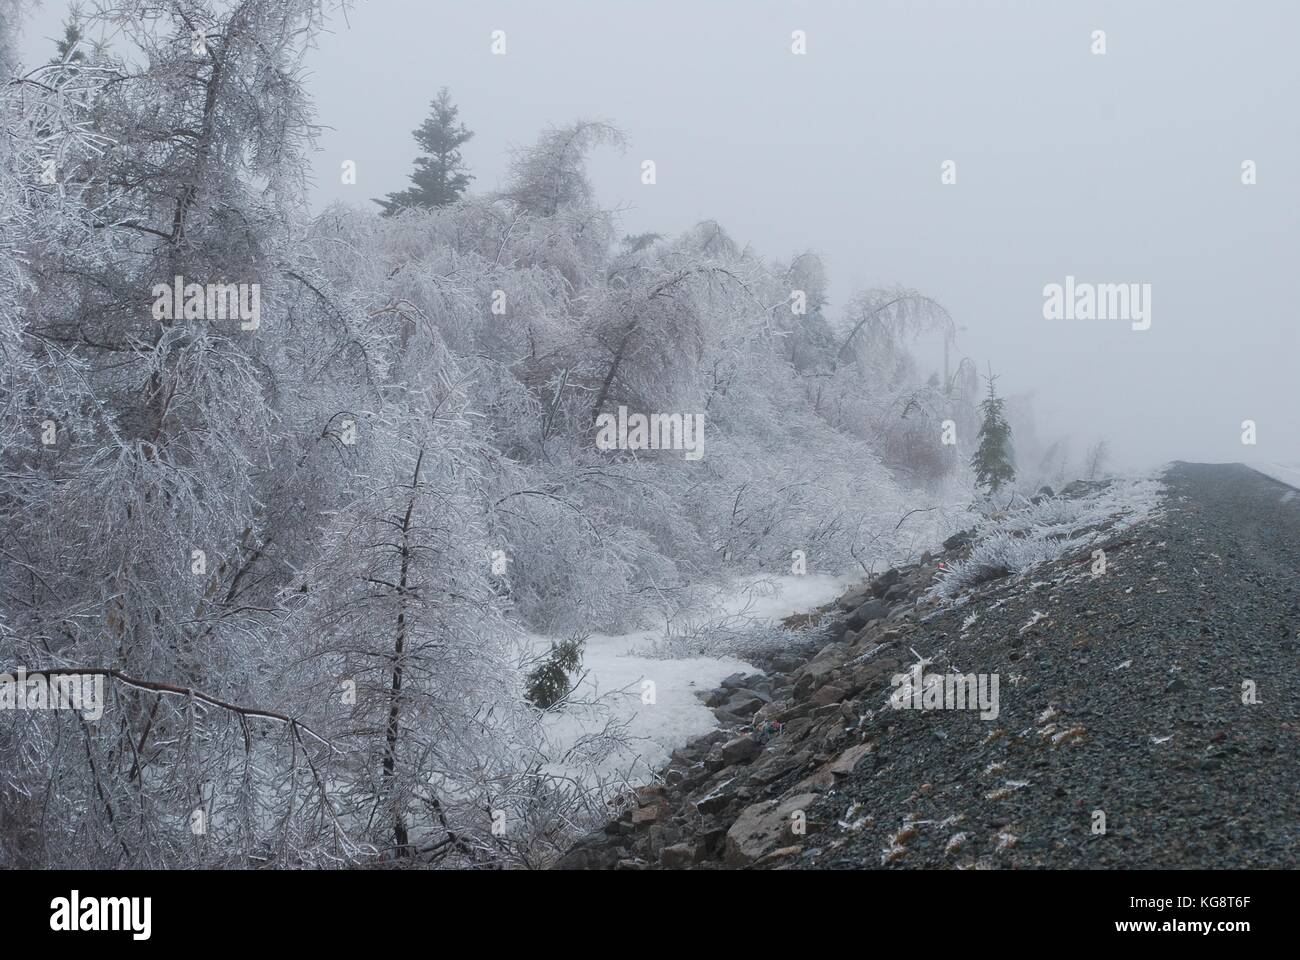 Ice Storm in Conception Bay South, NL, Kanada. Schwere Eisanhäufung auf Bäumen. Bäumen beugte sich aus dem Gewicht der Gewicht. Einfrieren Nebel in der Luft. Stockfoto